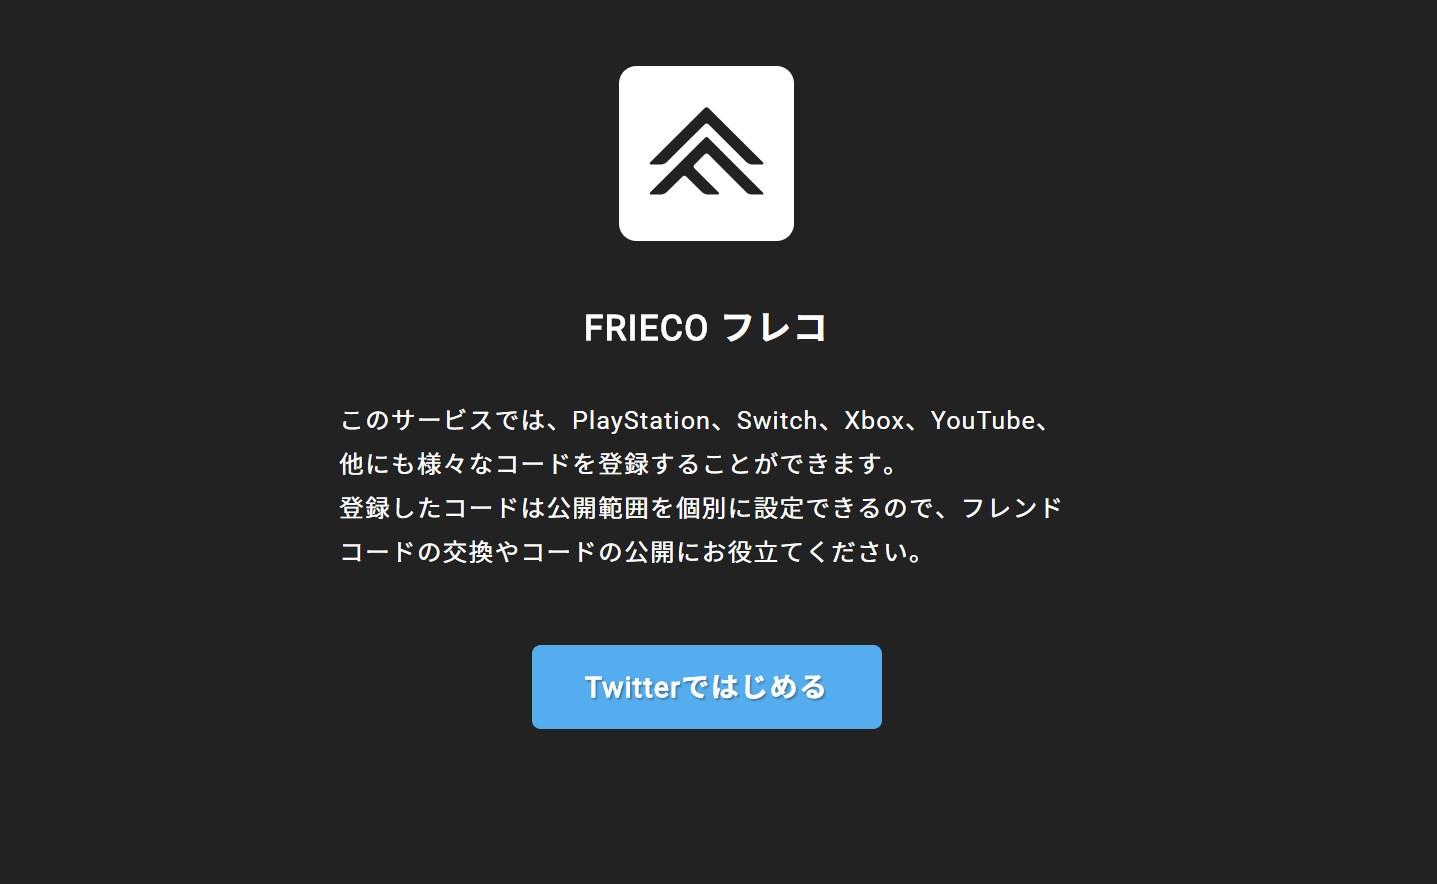 ゲームのフレンドコードなどを管理 公開できる Frieco で気軽に繋がろう すしぱくの楽しければいいのです